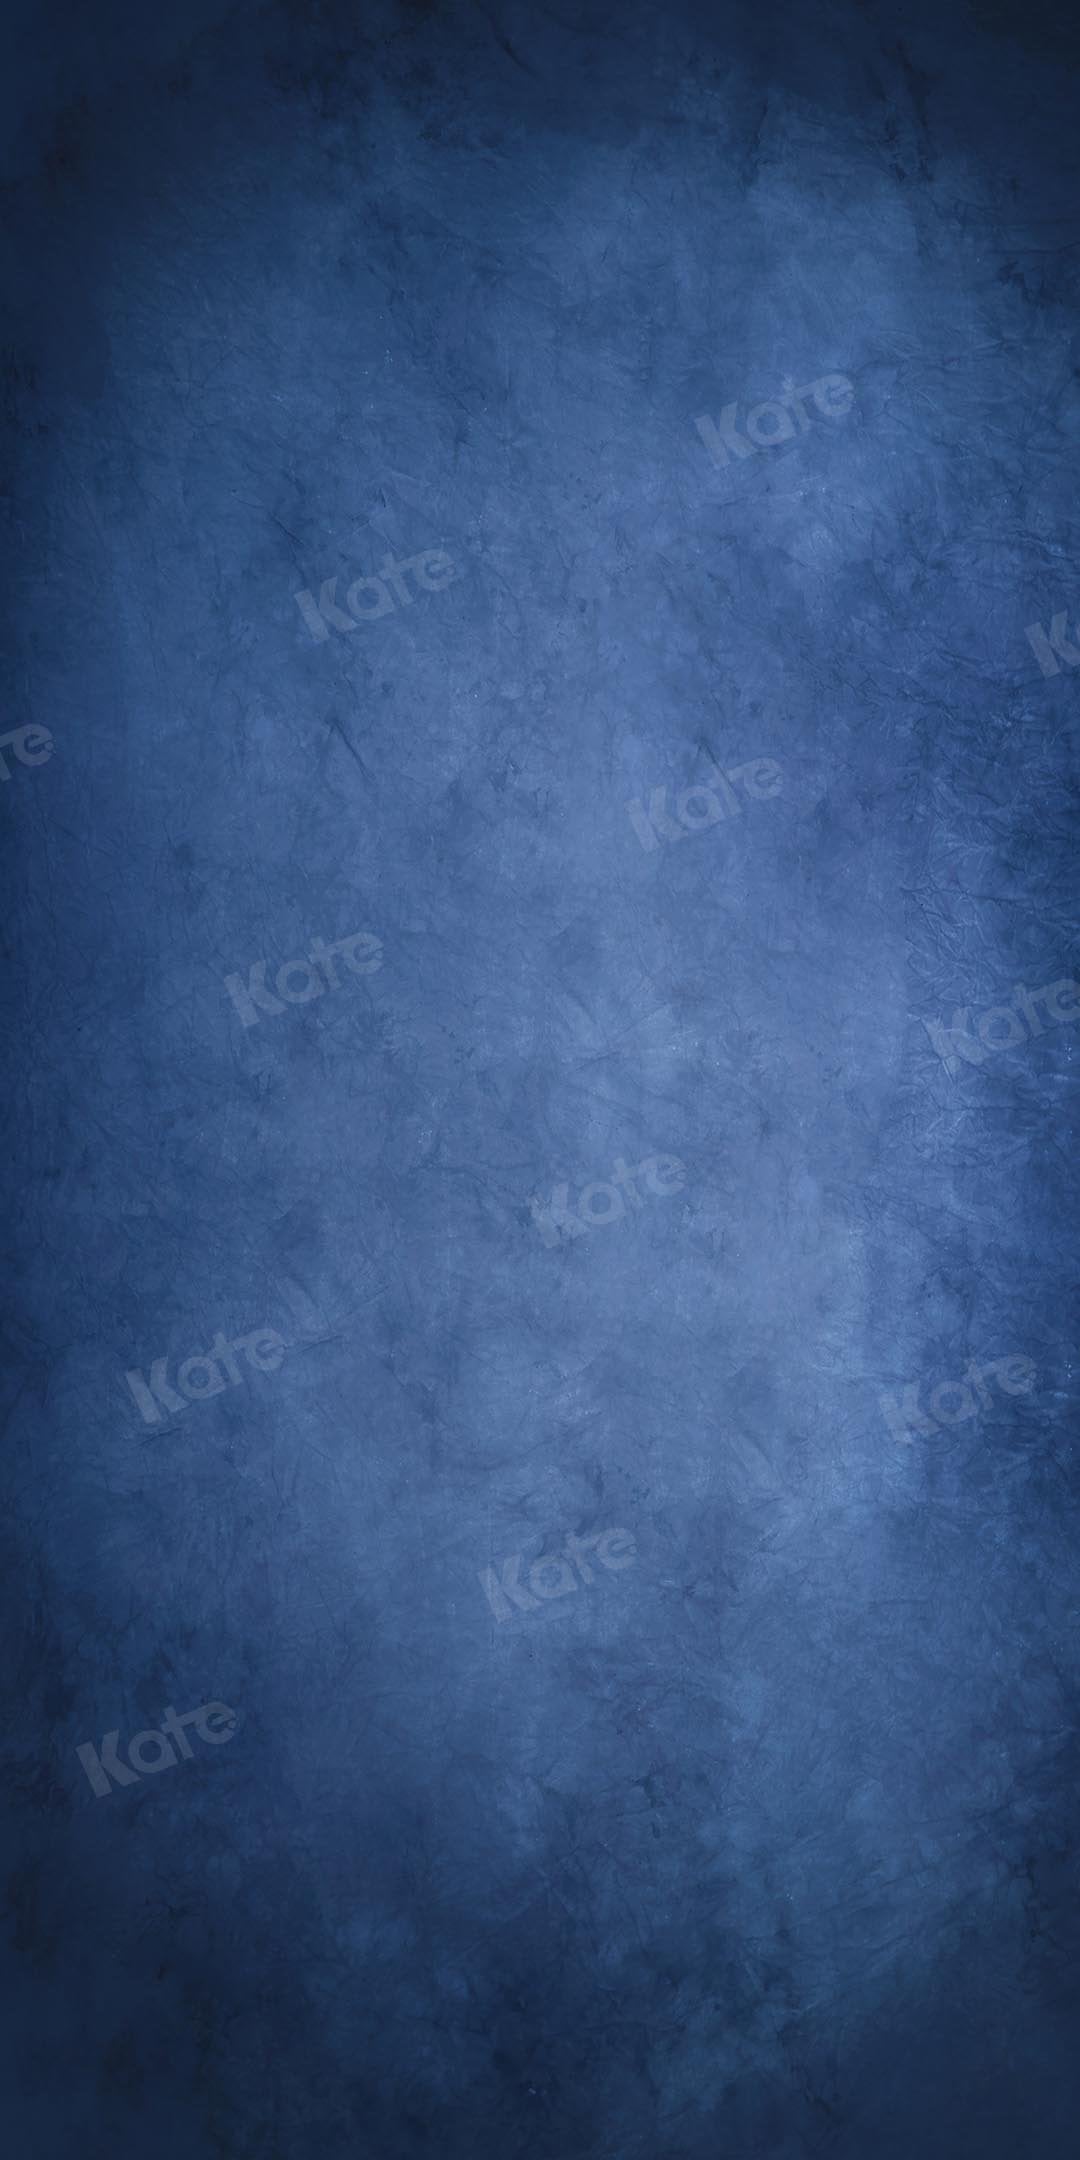 Kate Abstrakter blauer alter Meister Hintergrund